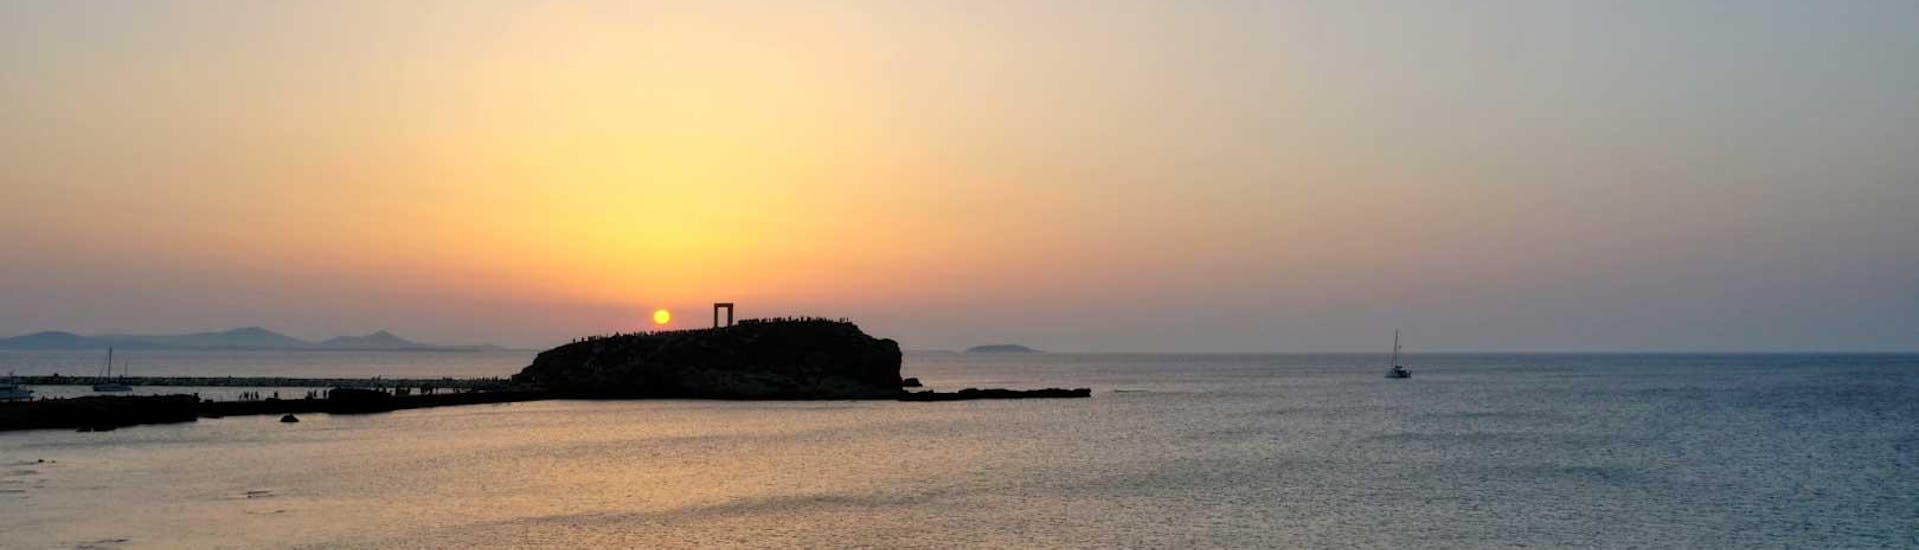 Durante el Crucero Privado a Vela al Atardecer en Naxos con el Catamarán de Naxos, podrá disfrutar de una maravillosa vista del Templo de Apollon en Naxos al atardecer.